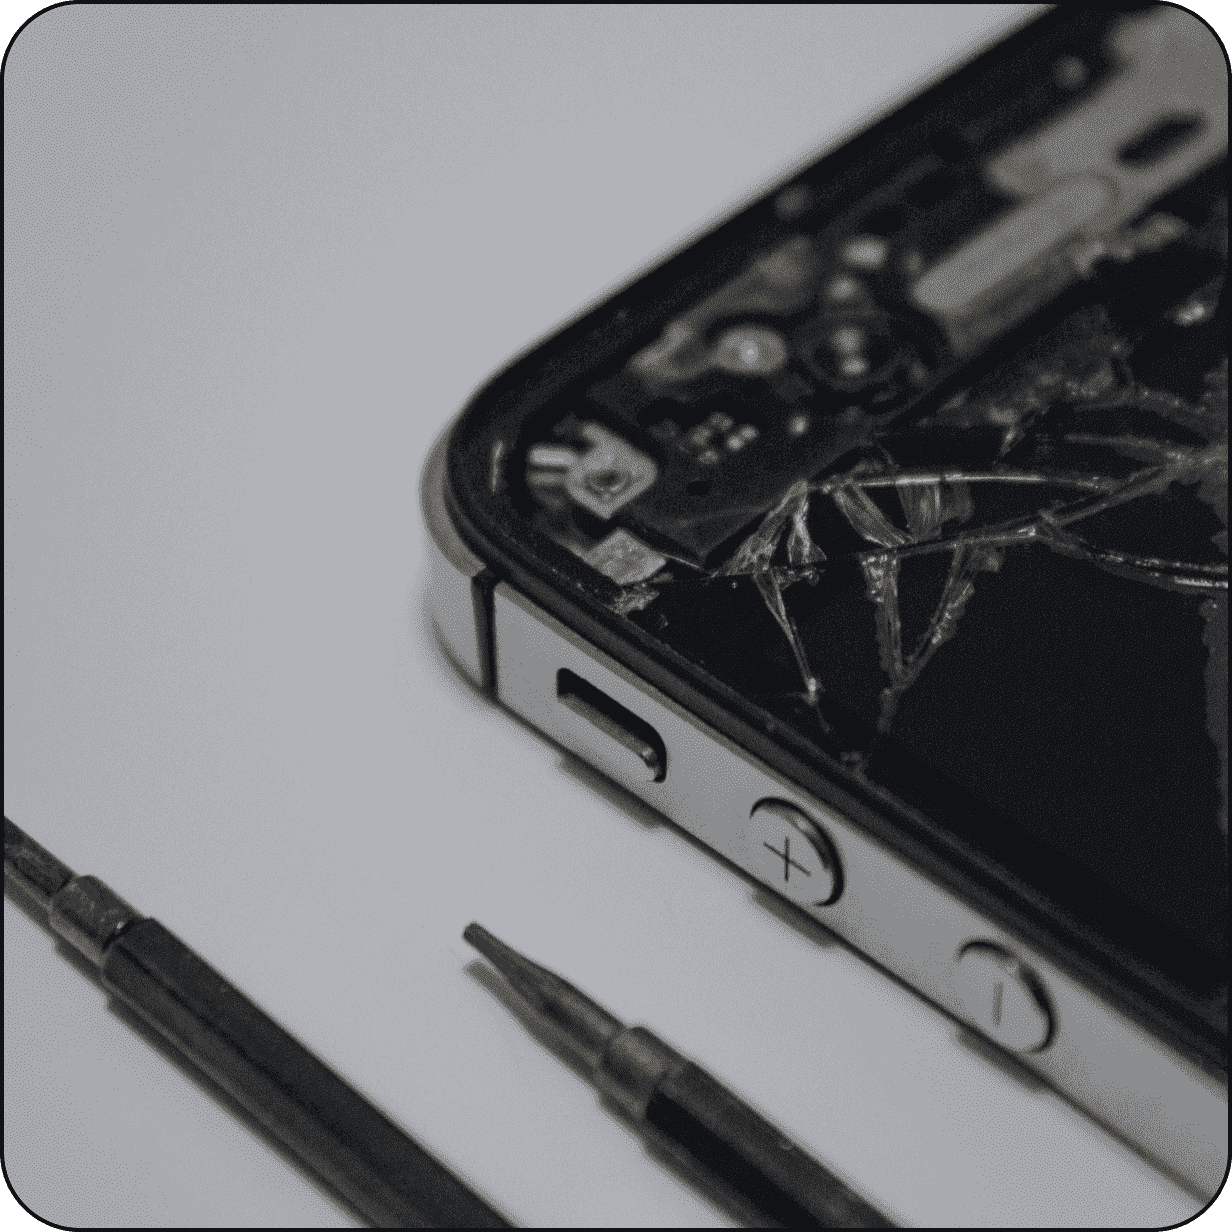 Замена камеры iPhone X